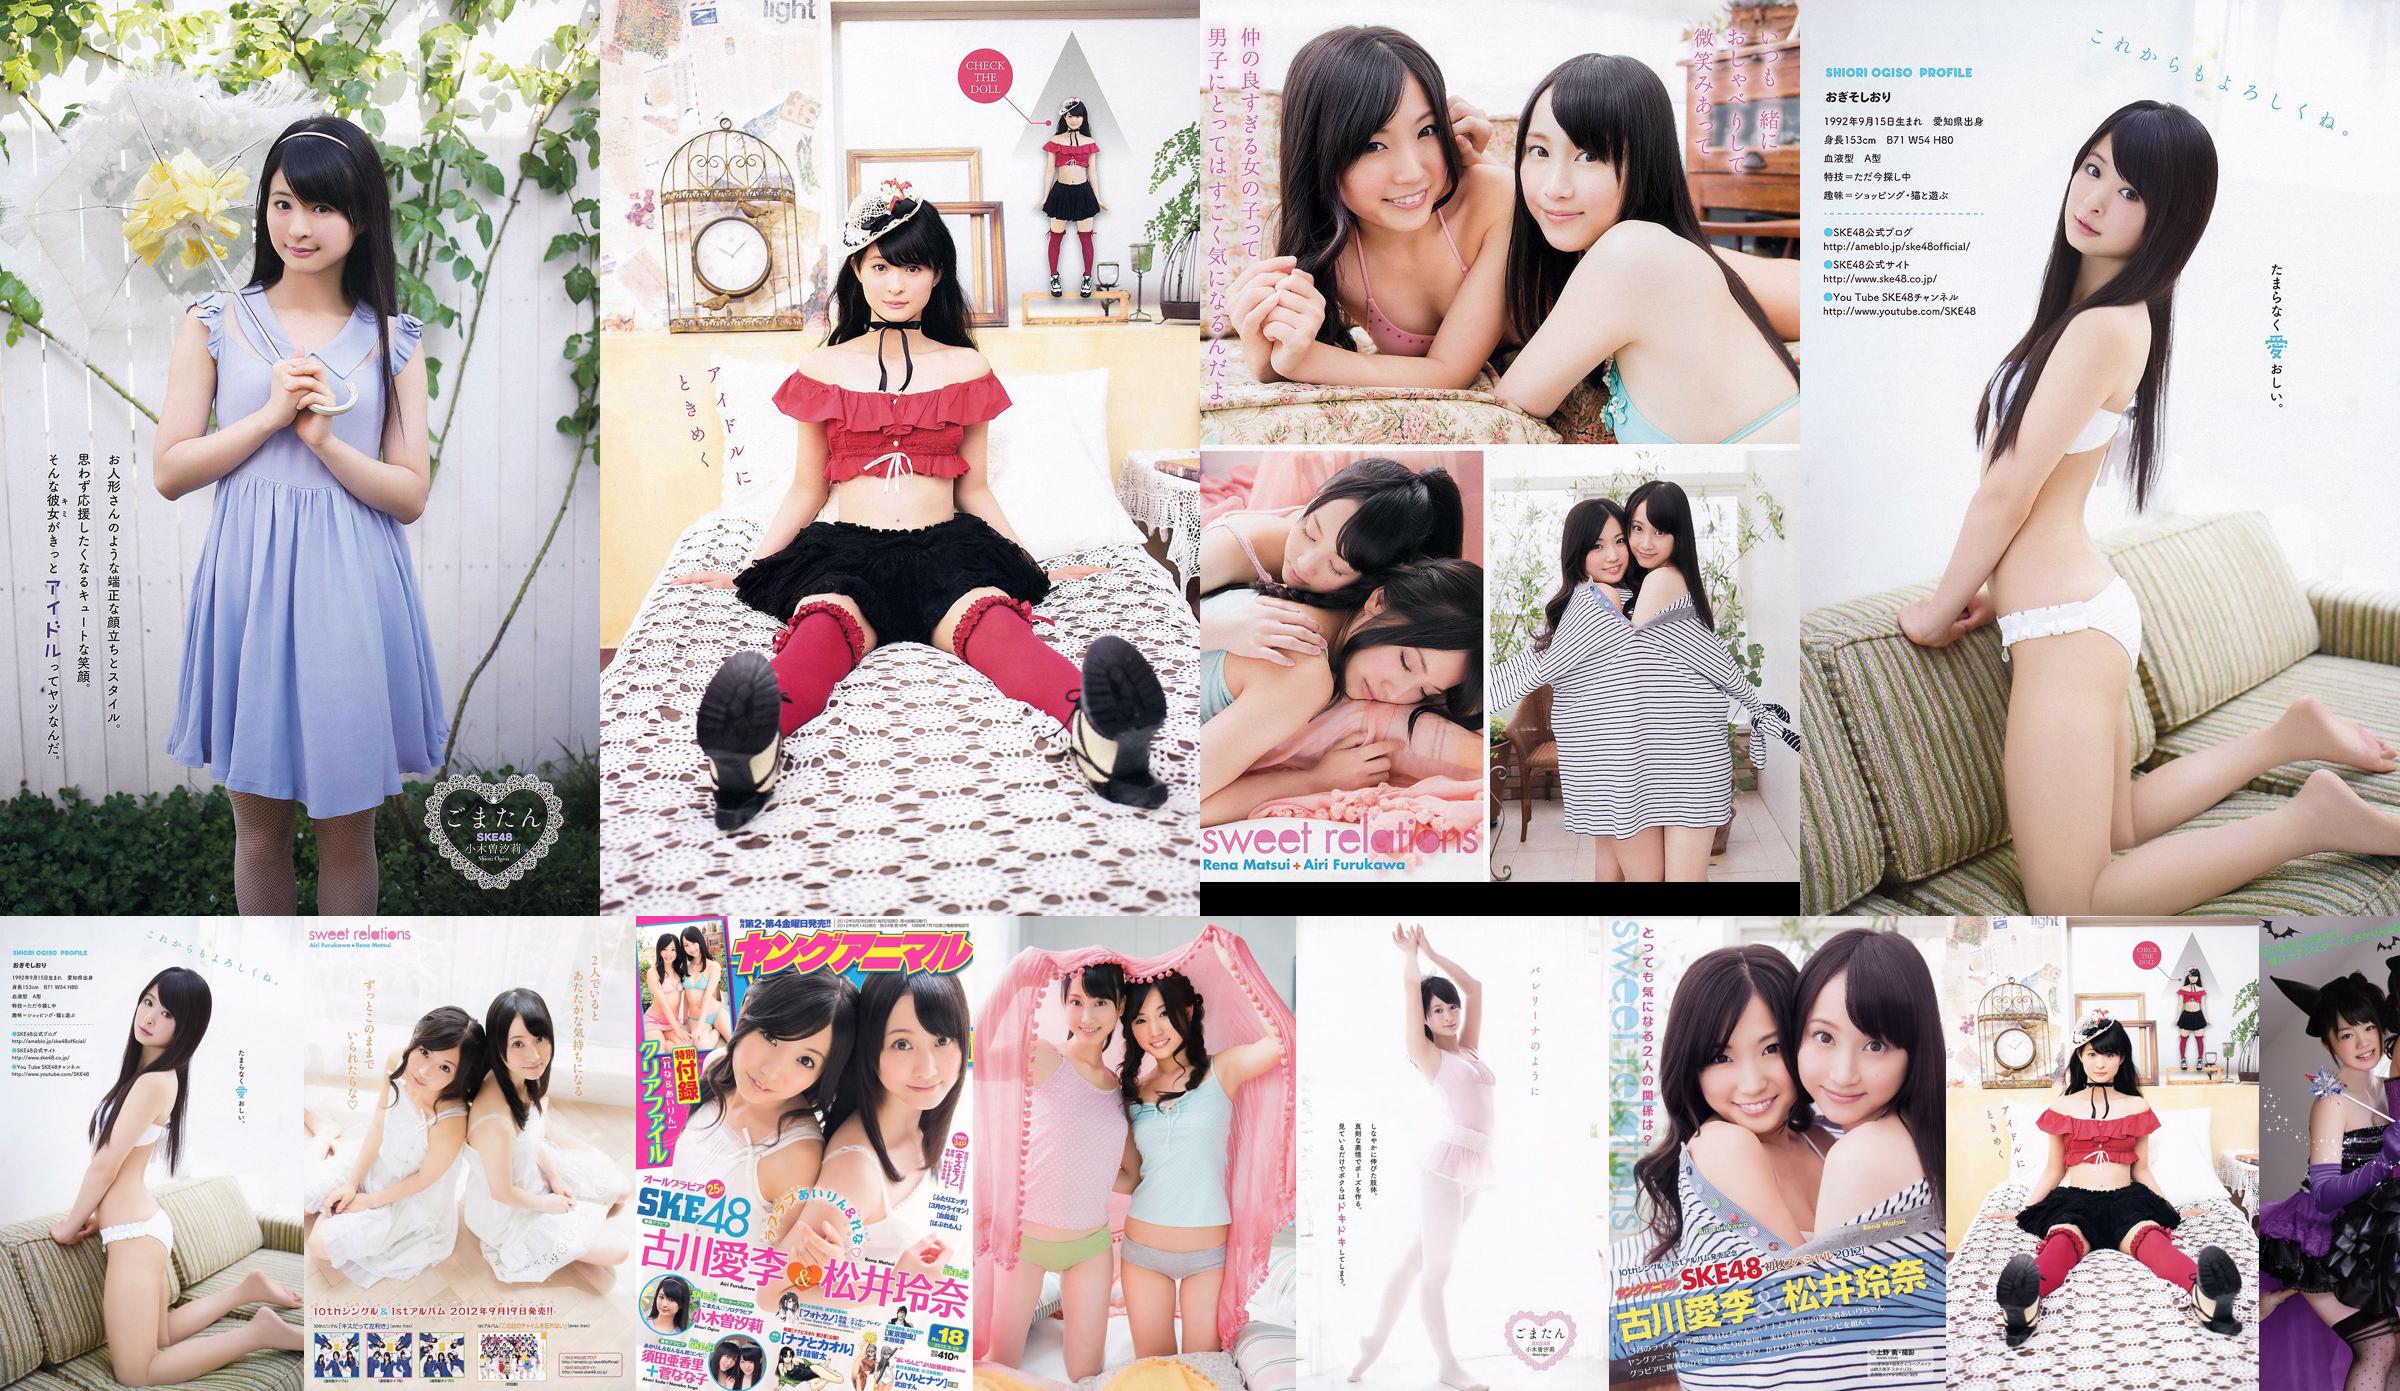 Ai Li Furukawa, Rena Matsui, Sasa Ogi, Aikari Suda [Young Animal] 2012 nr 18 Photo Magazine No.17ad39 Strona 3